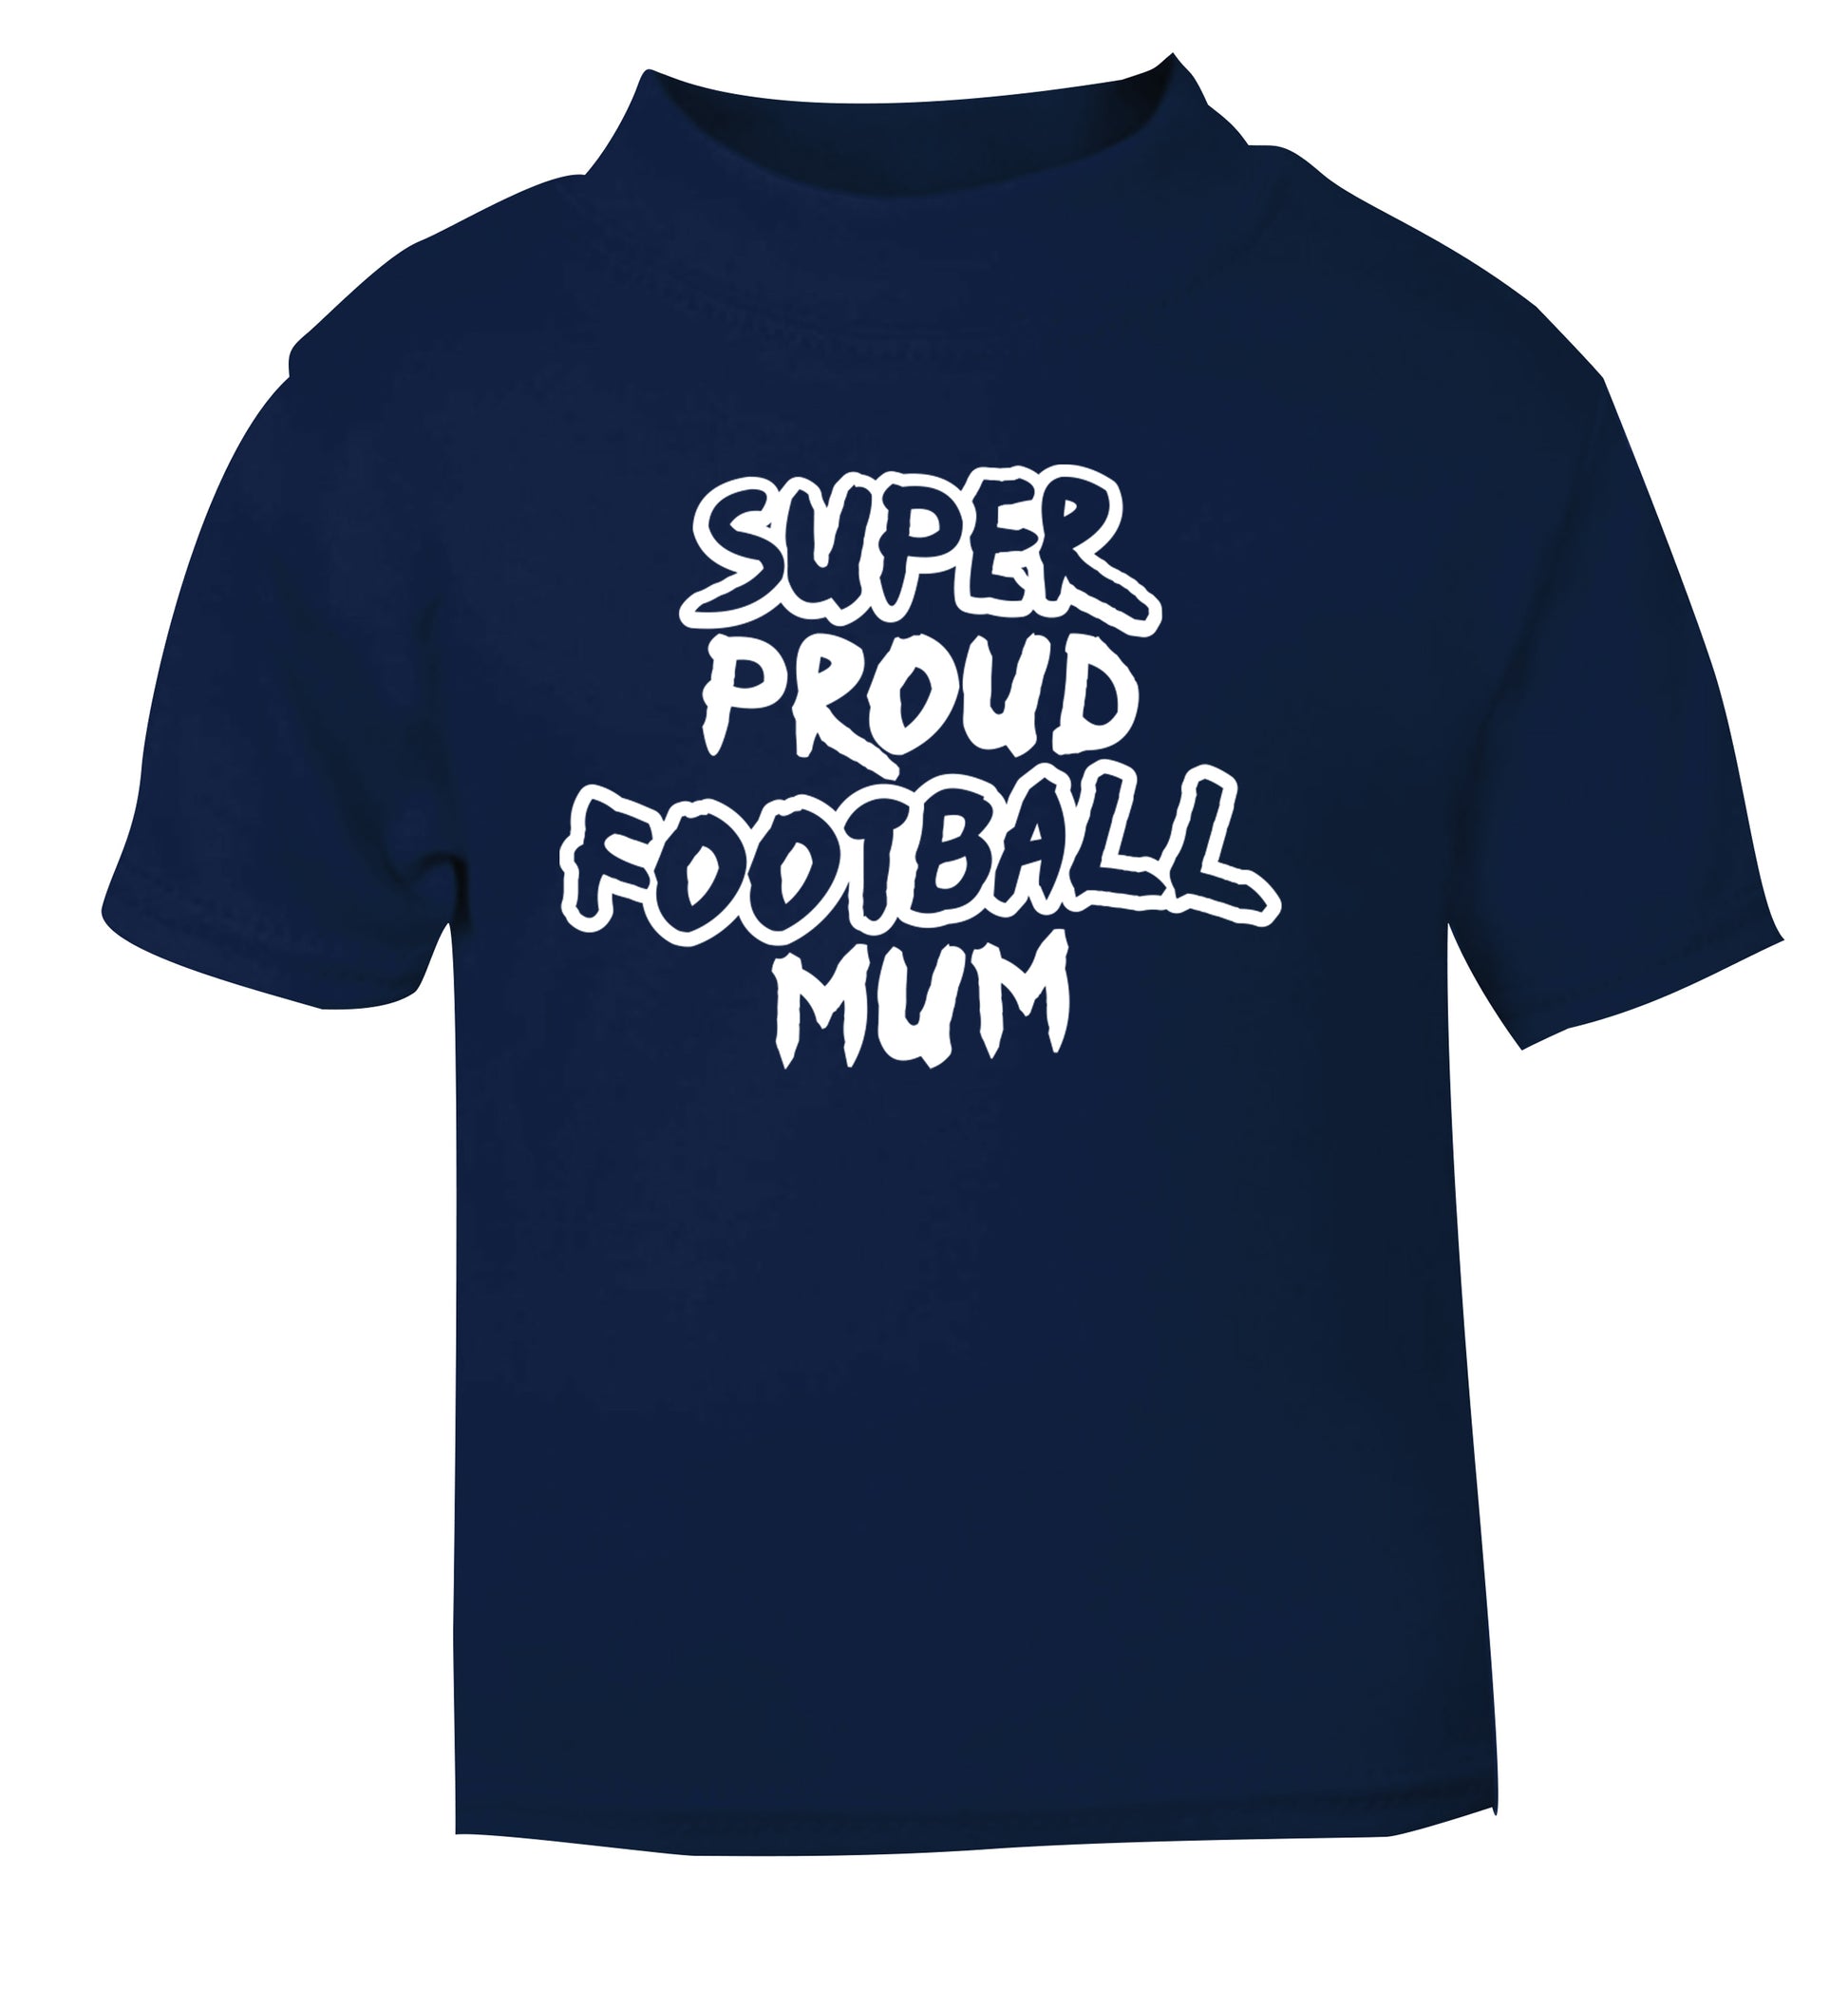 Super proud football mum navy Baby Toddler Tshirt 2 Years